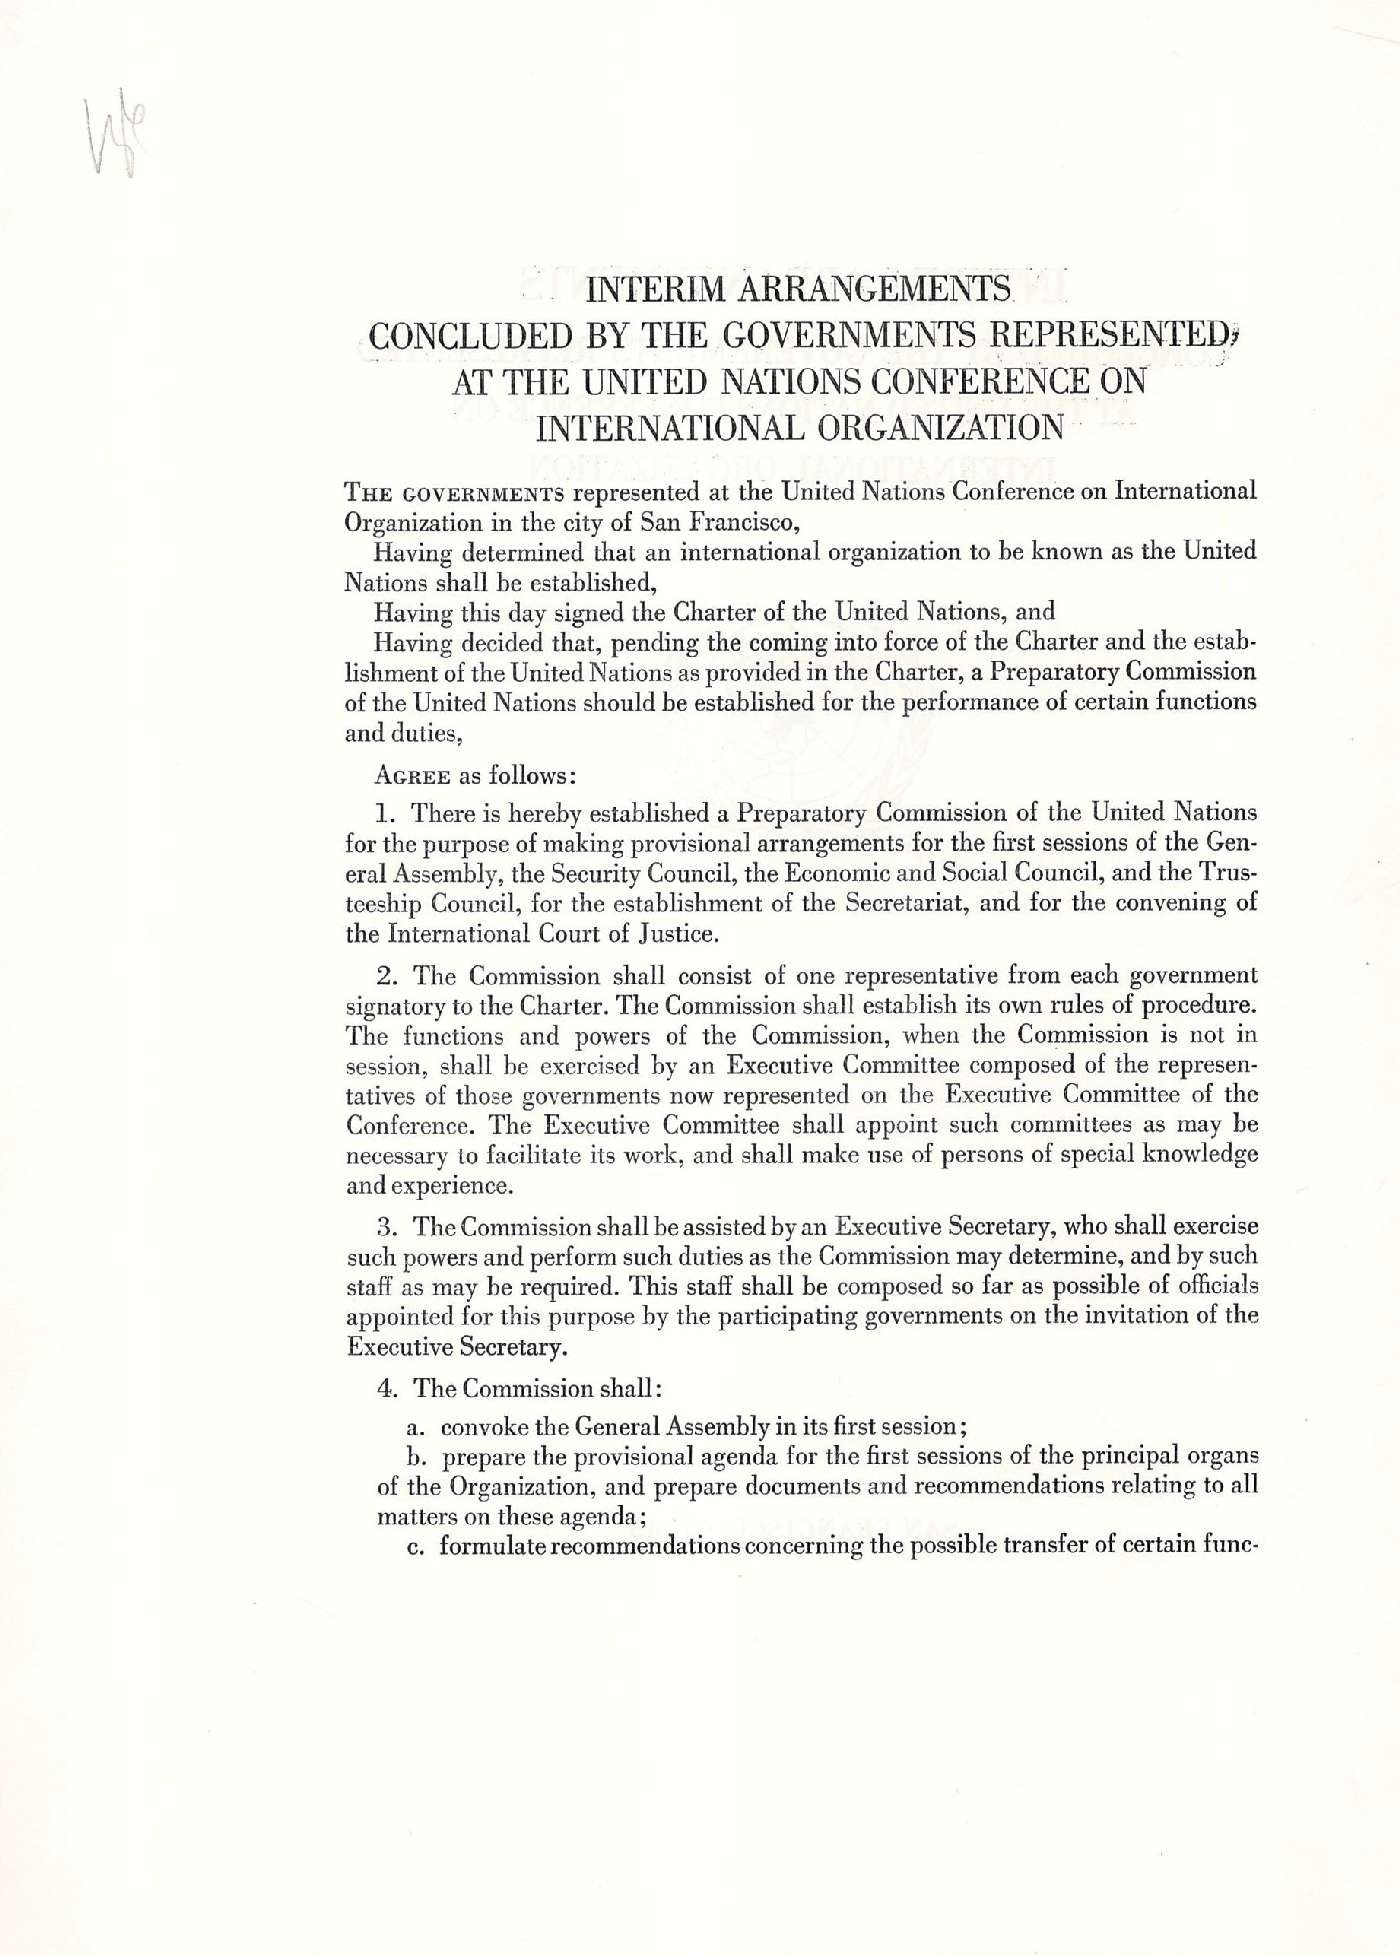 Тимчасова угода, укладена представленими на Конференції Об'єднаних Націй у Сан-Фрациско урядами щодо створення Міжнародної Організації. 1945 р.